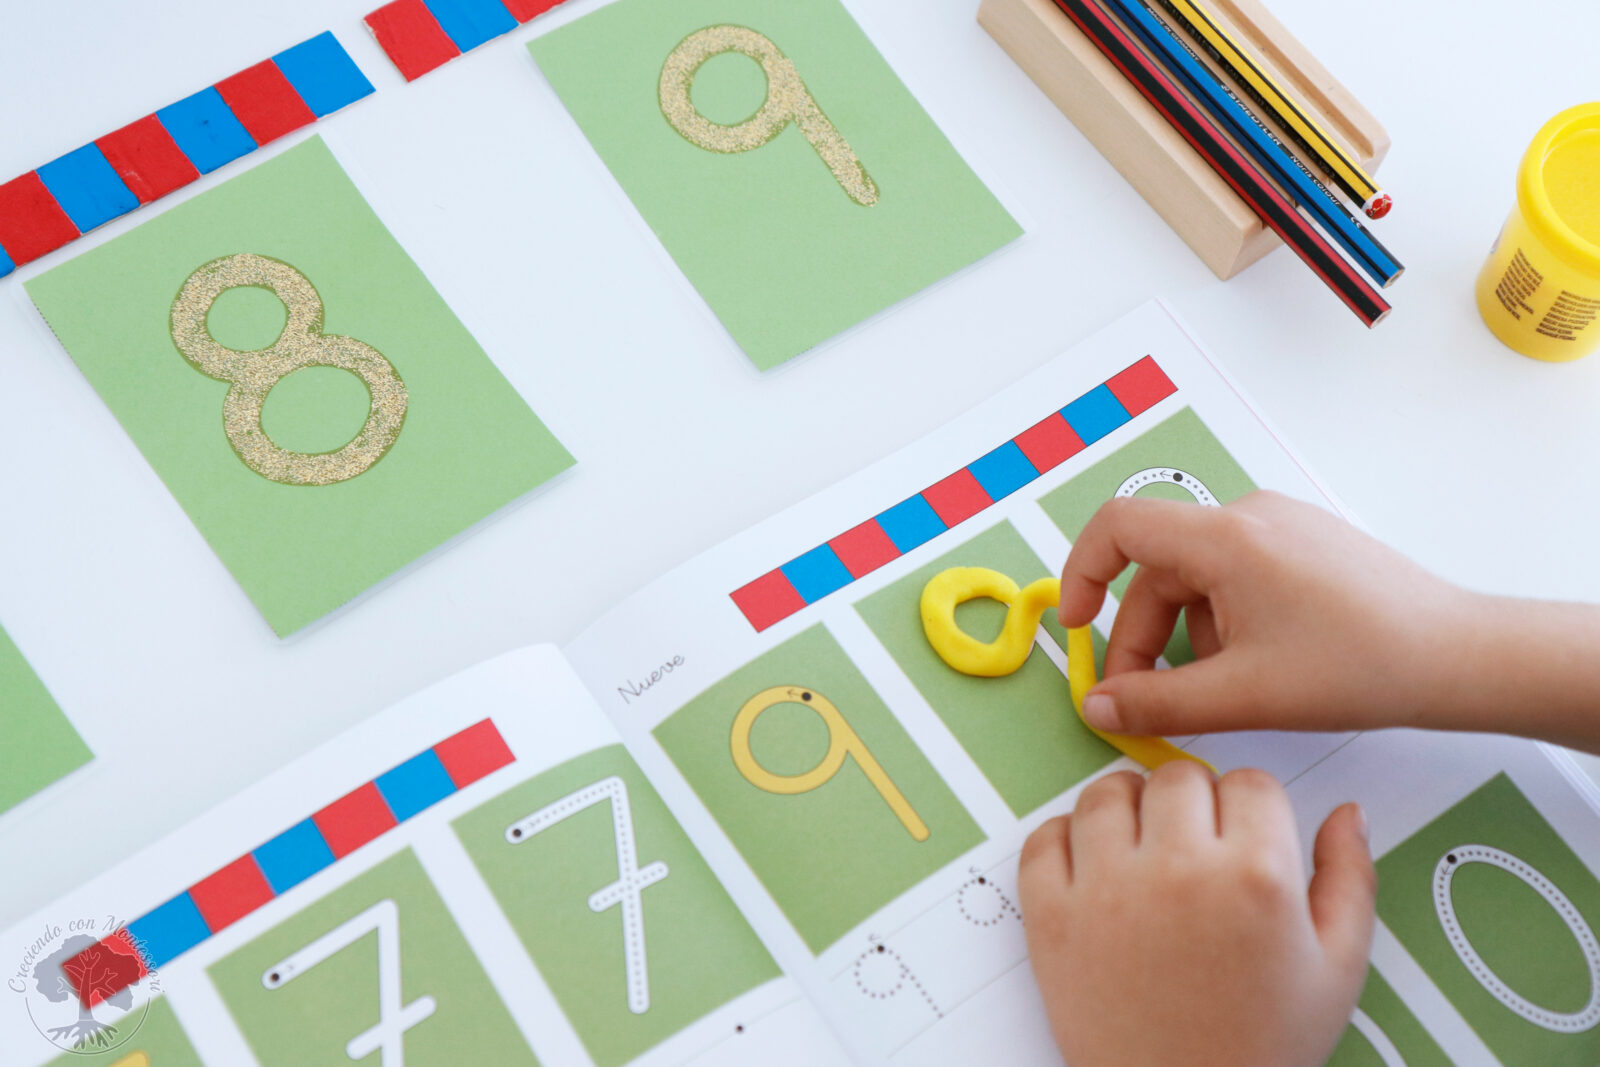 Creciendo con Montessori. Cuadernos de actividades - Aprendo a